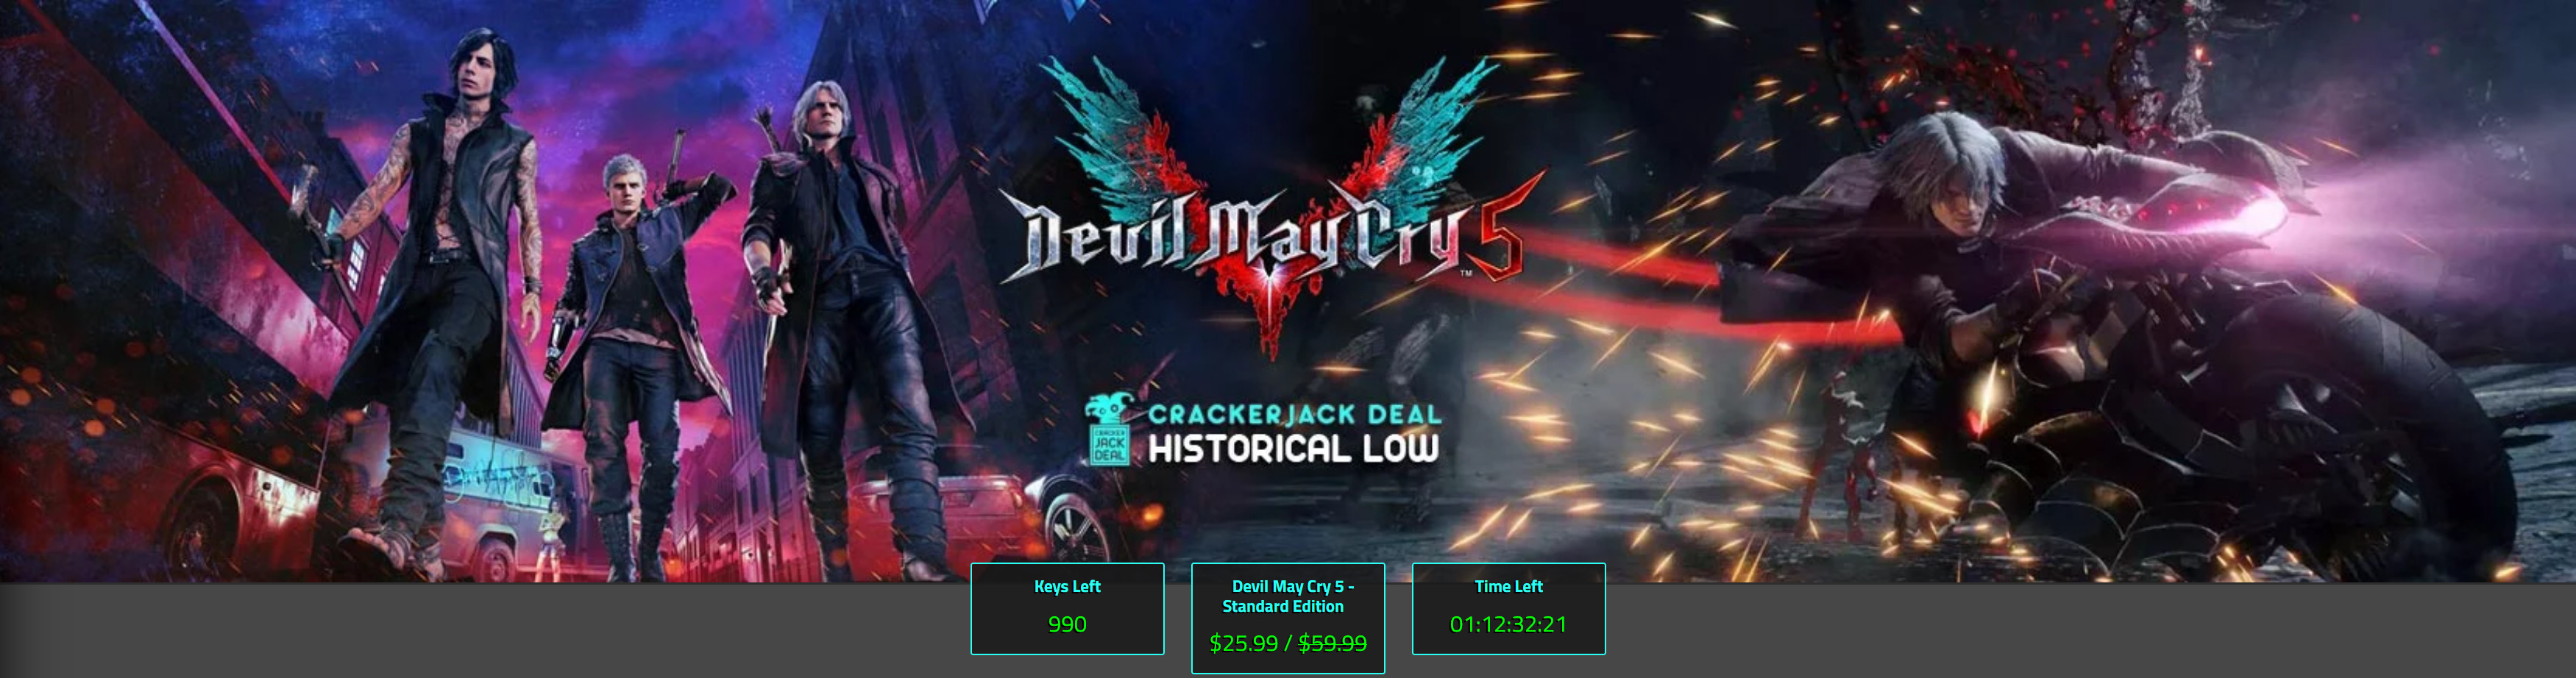 Screenshot_2019-09-25 Devil May Cry 5 at a historical HALF-demon cost .jpg